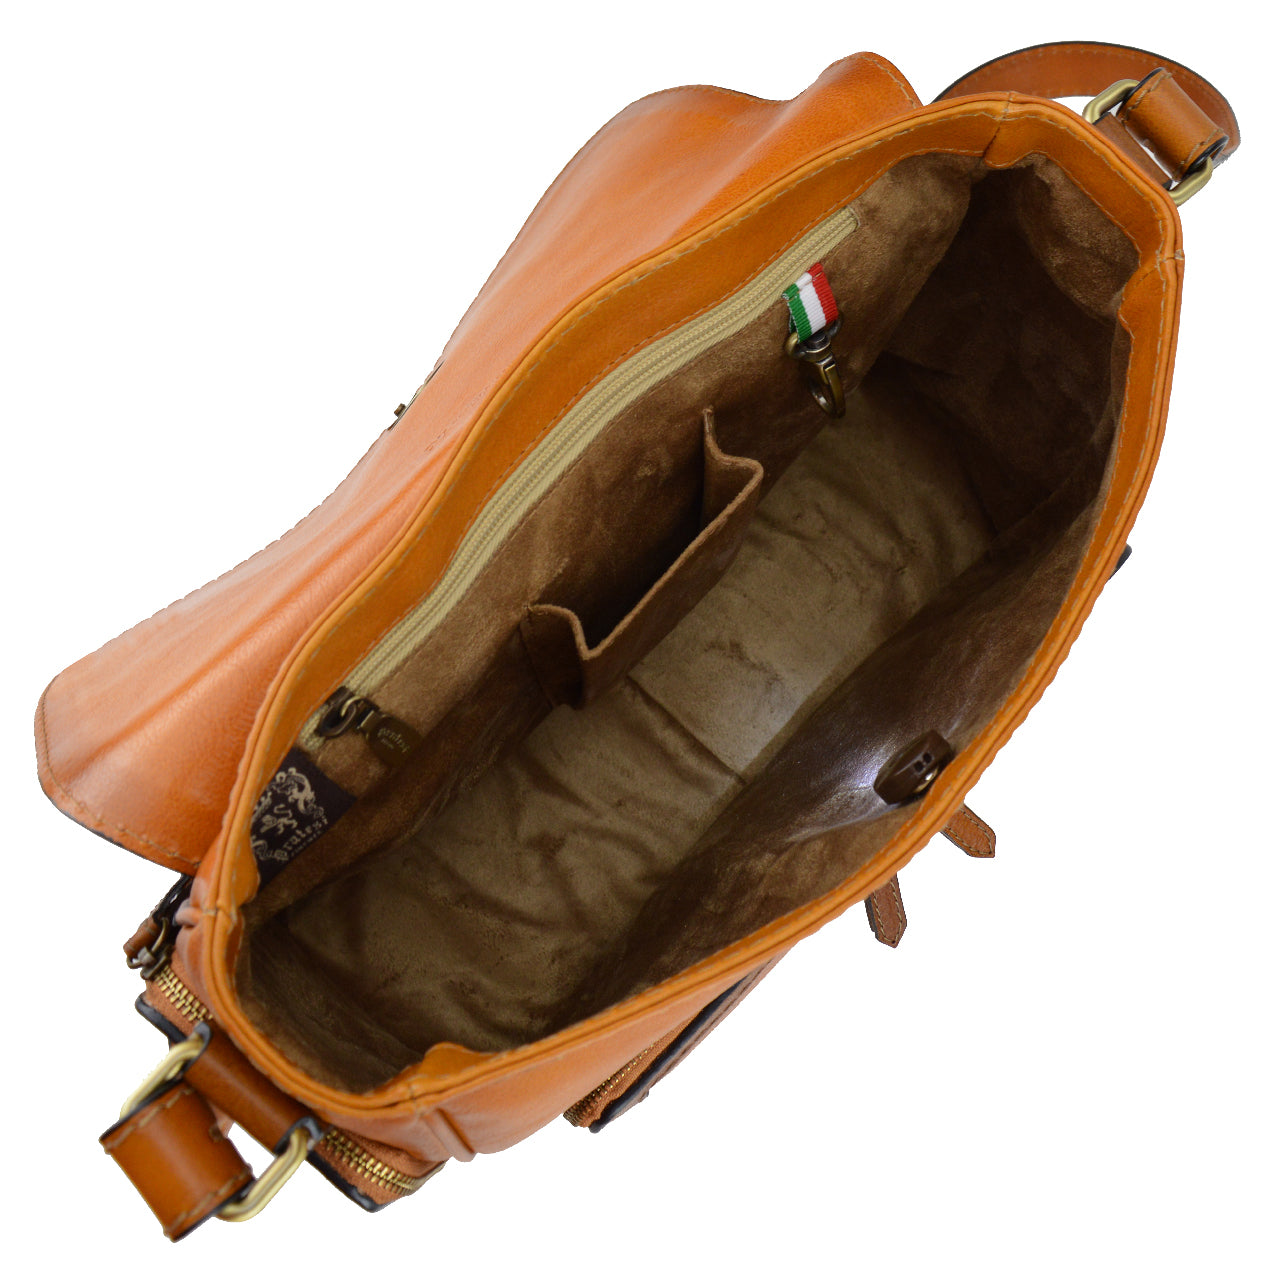 Pratesi Bag Elba in genuine Italian leather